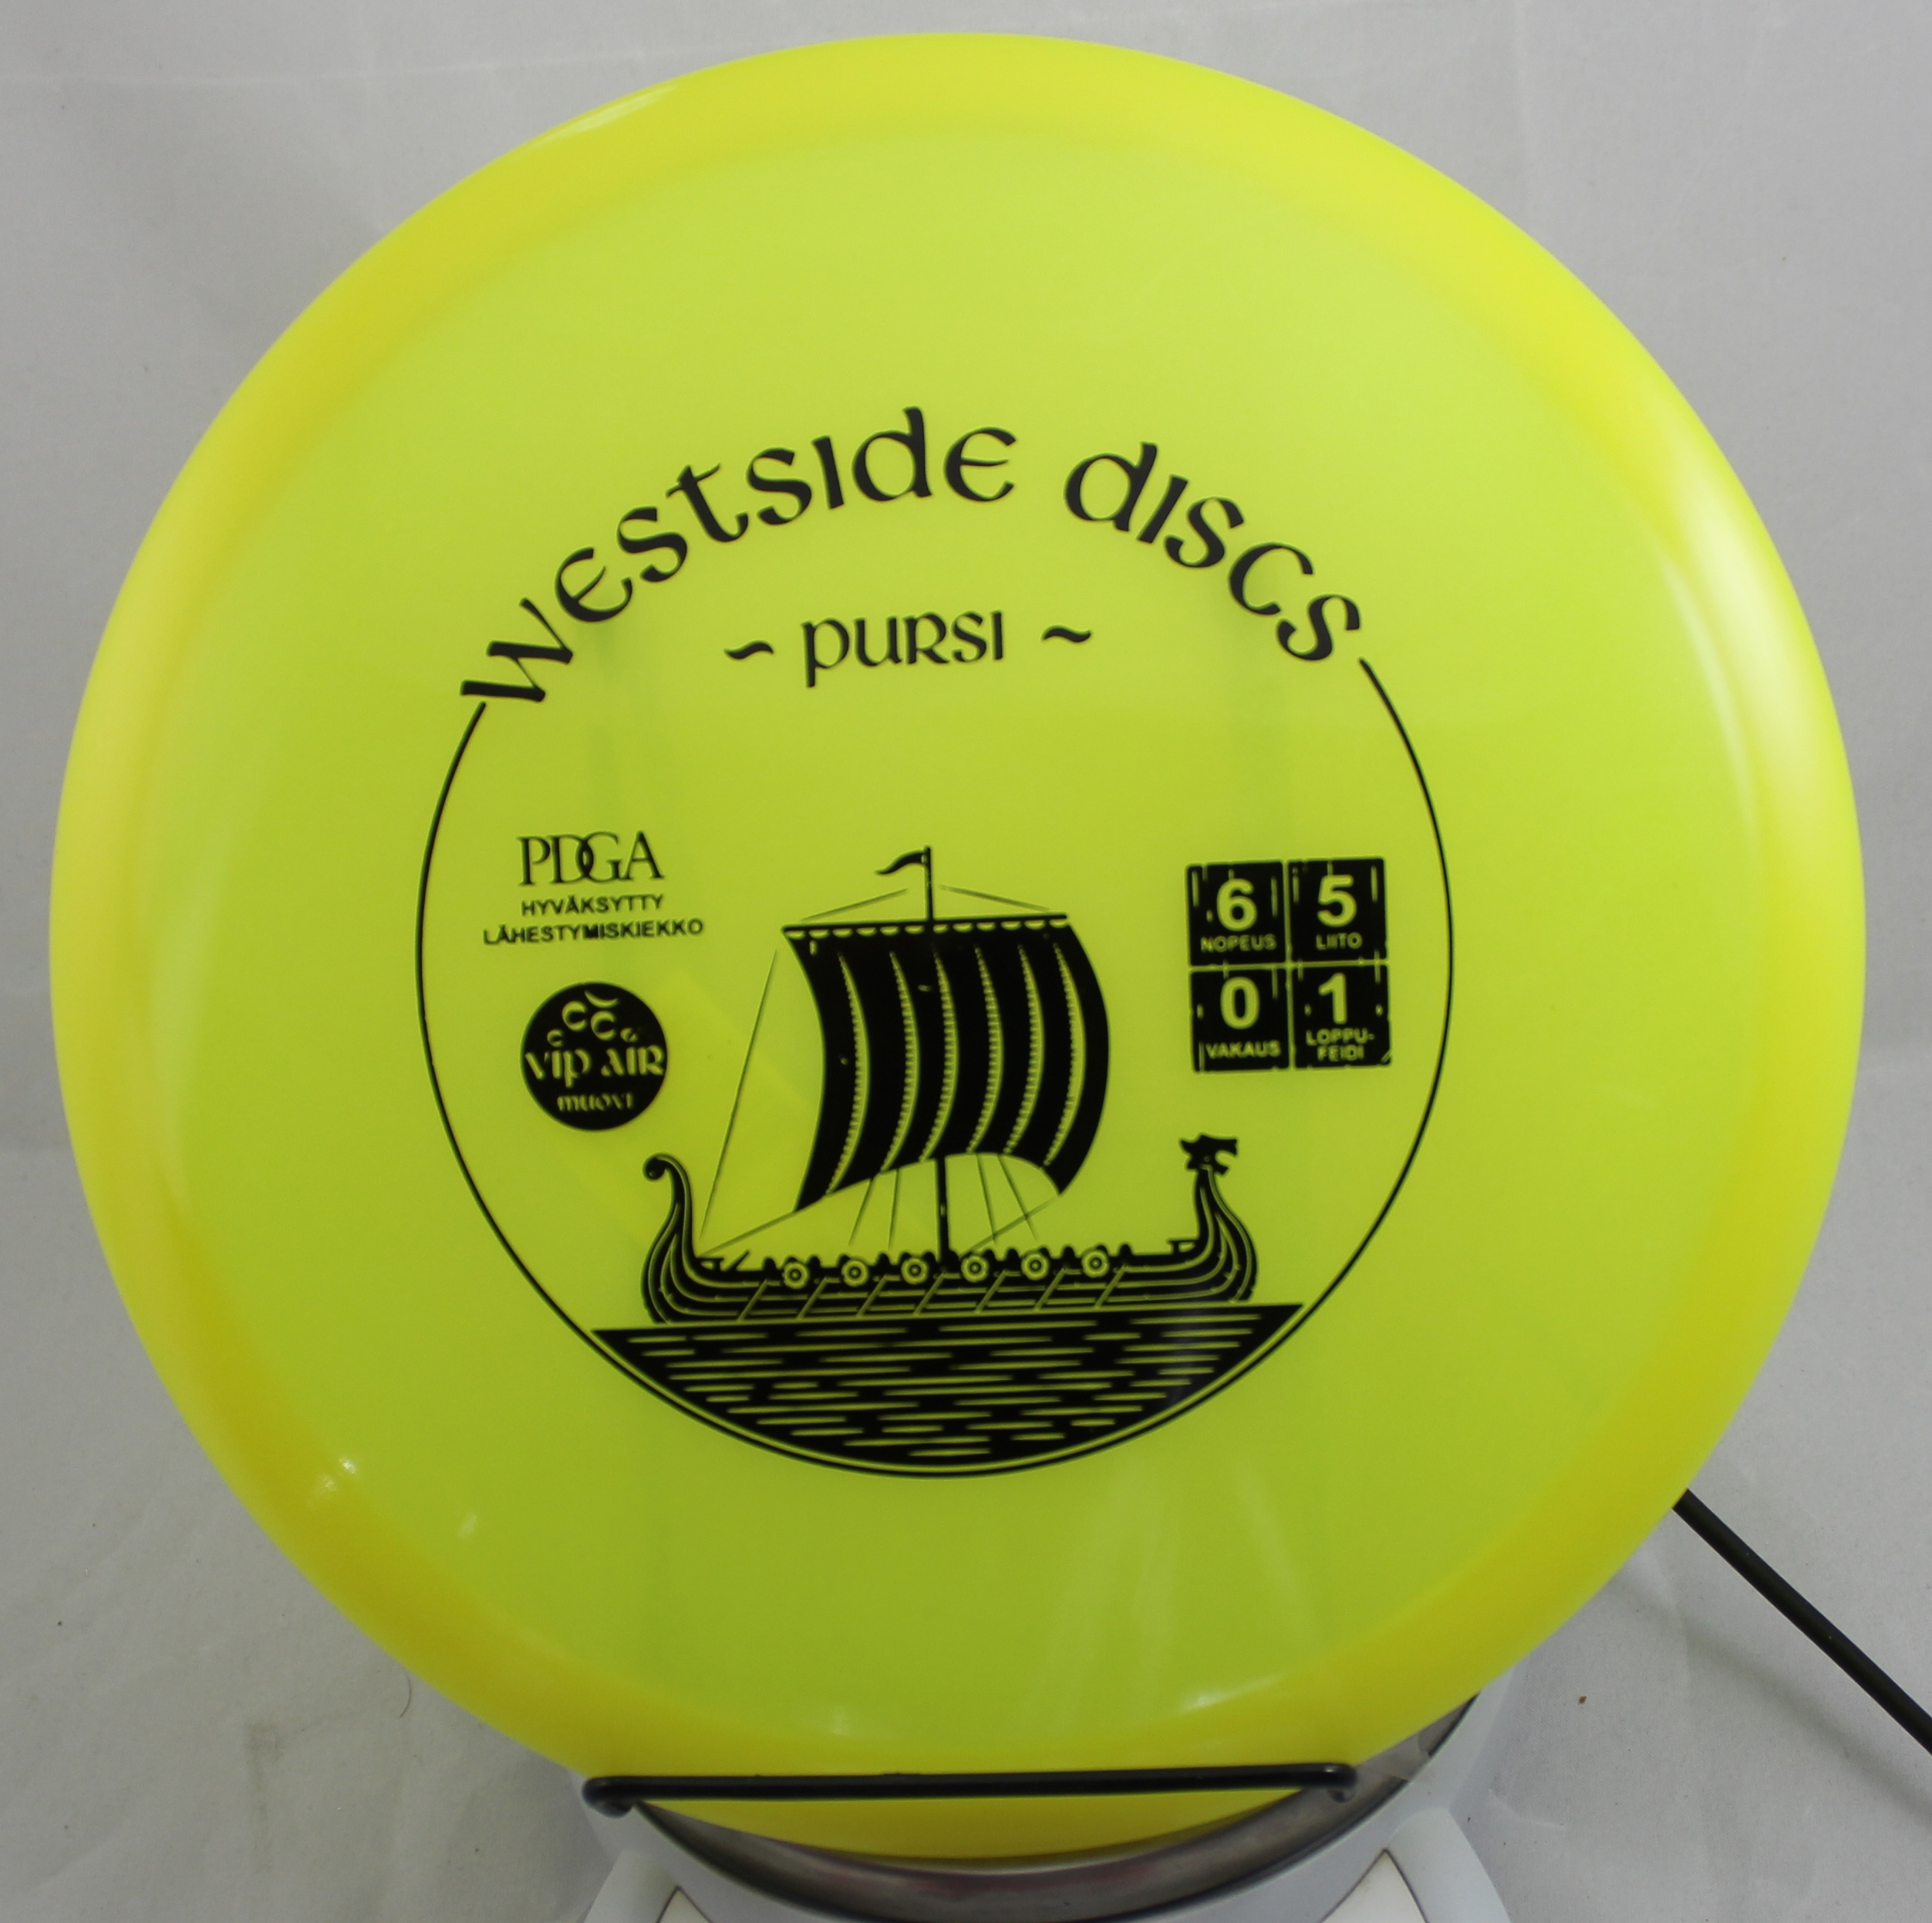 Westside Discs Warship disc golf